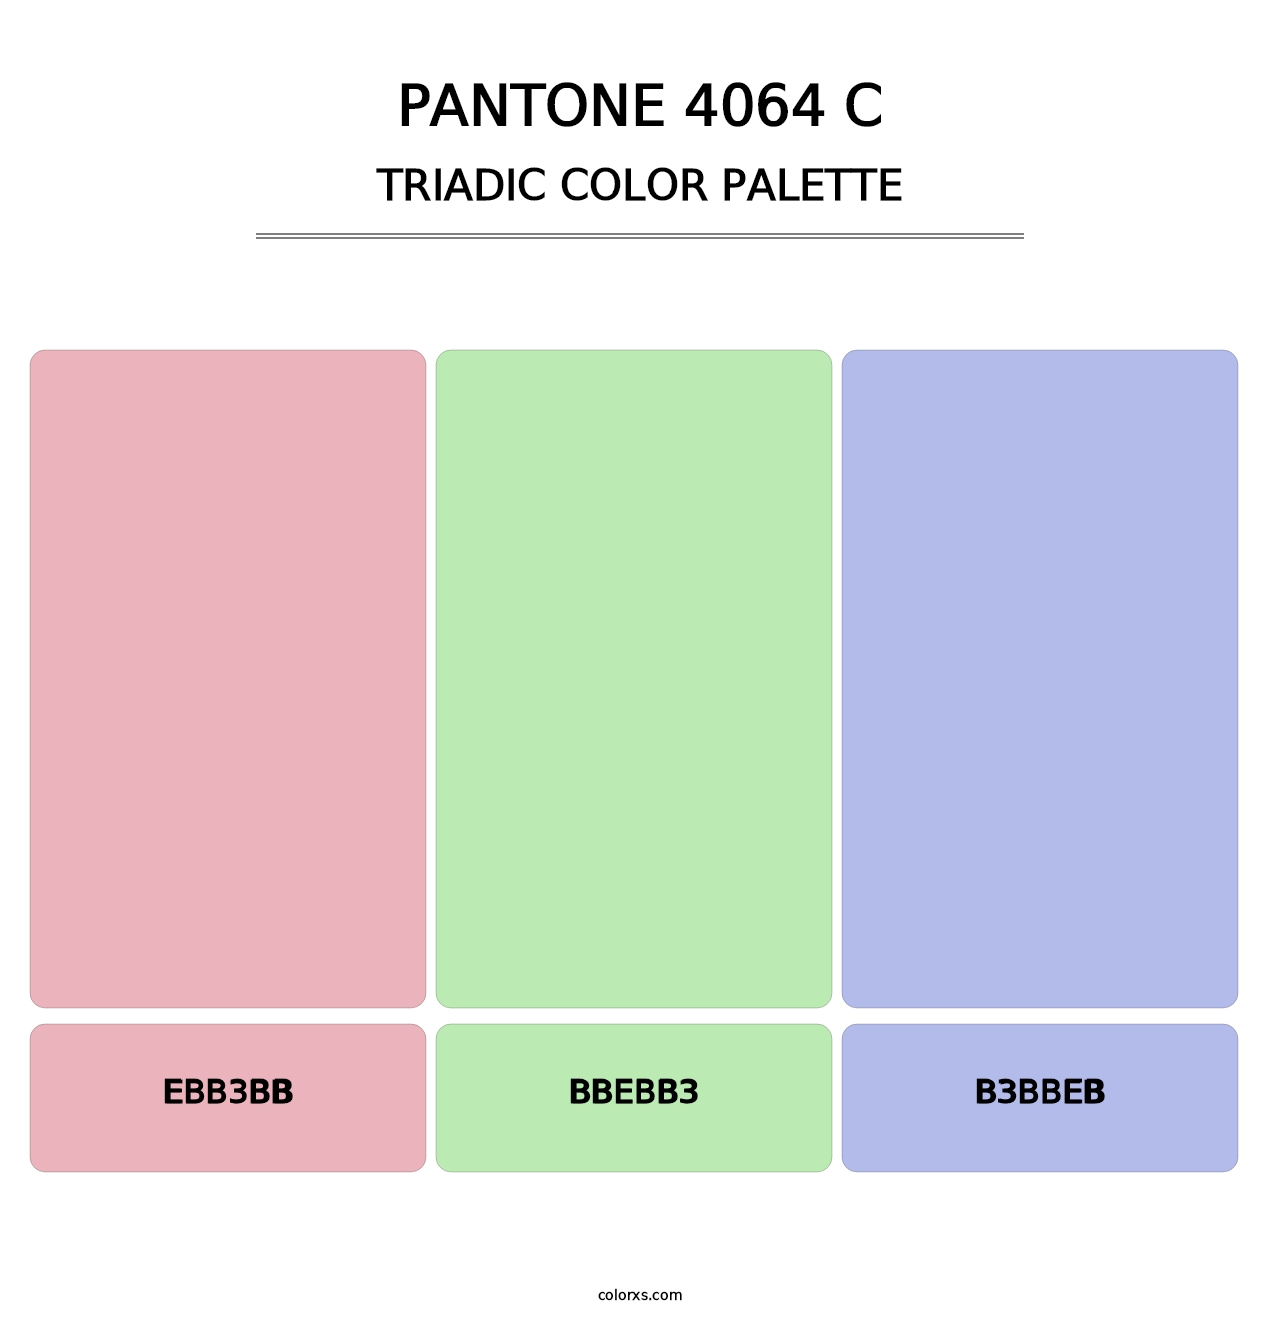 PANTONE 4064 C - Triadic Color Palette